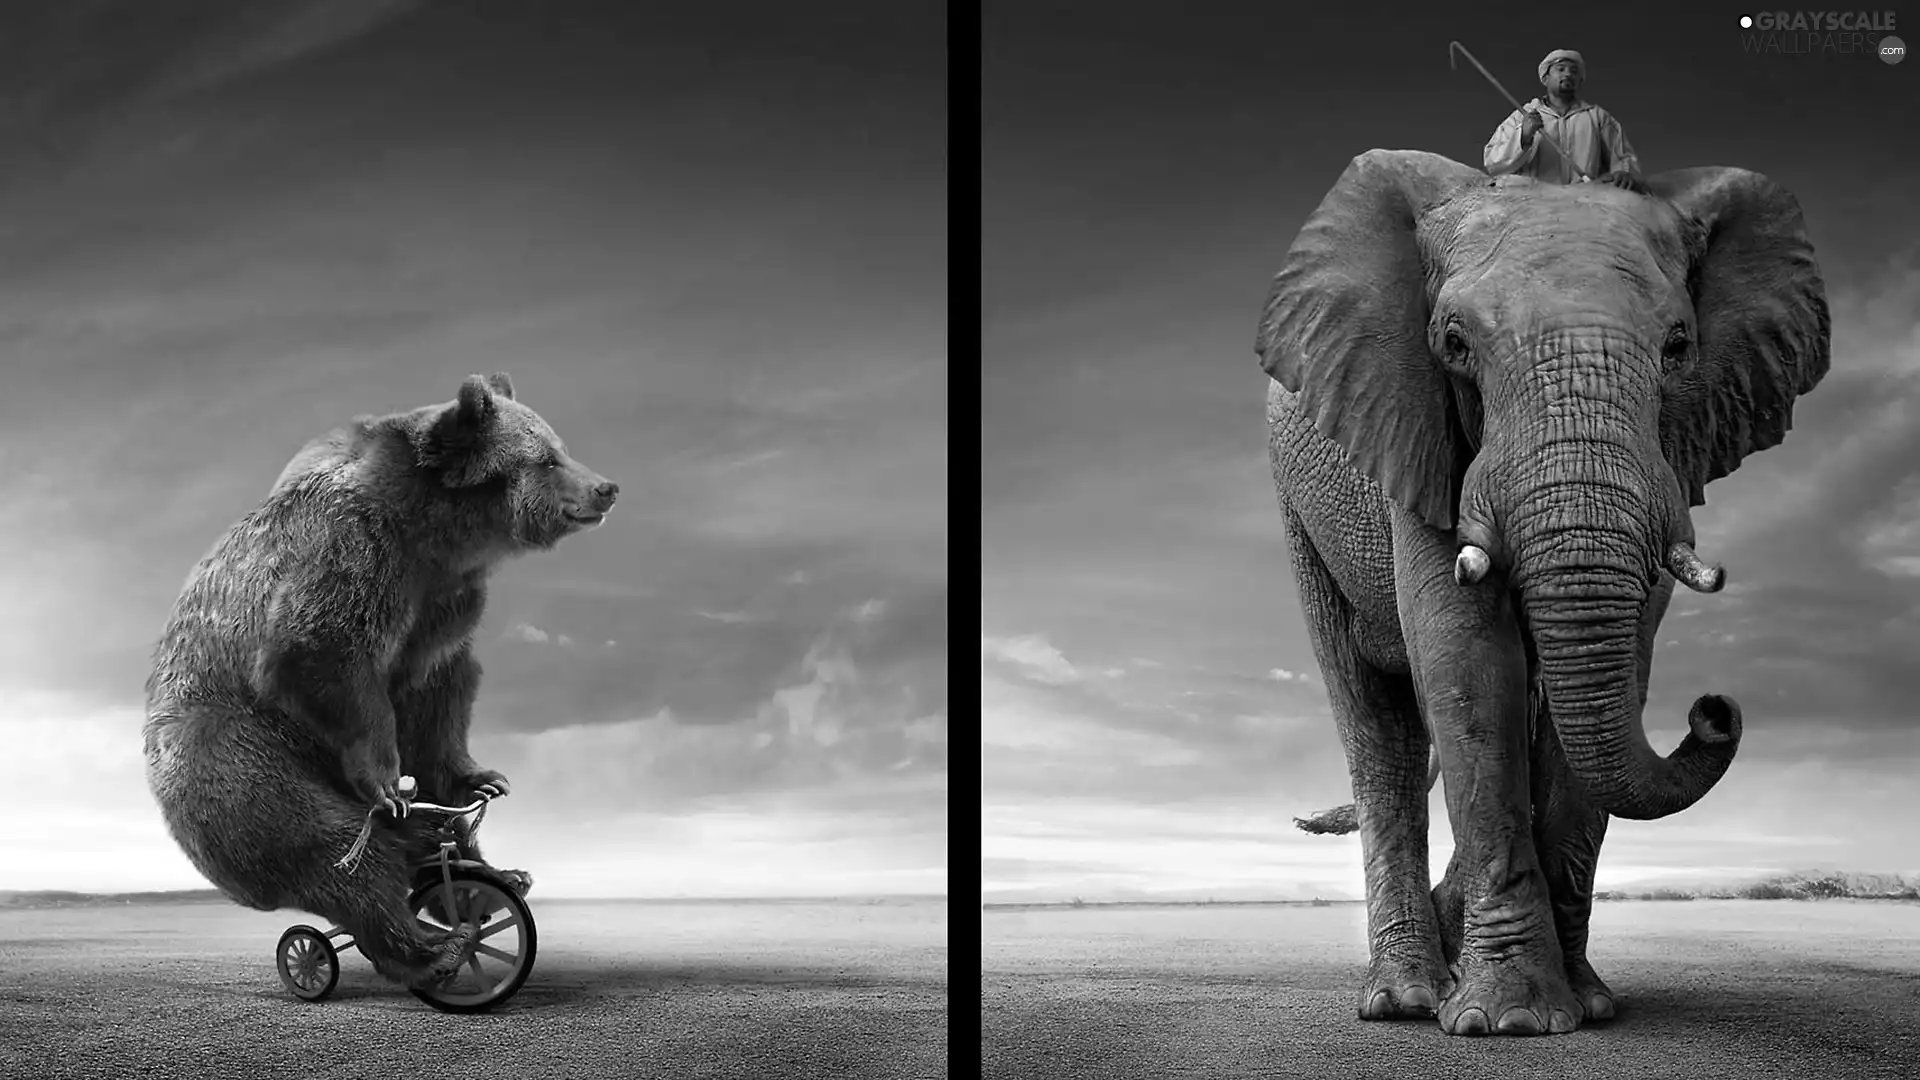 Bear, Elephant, Human, Bike